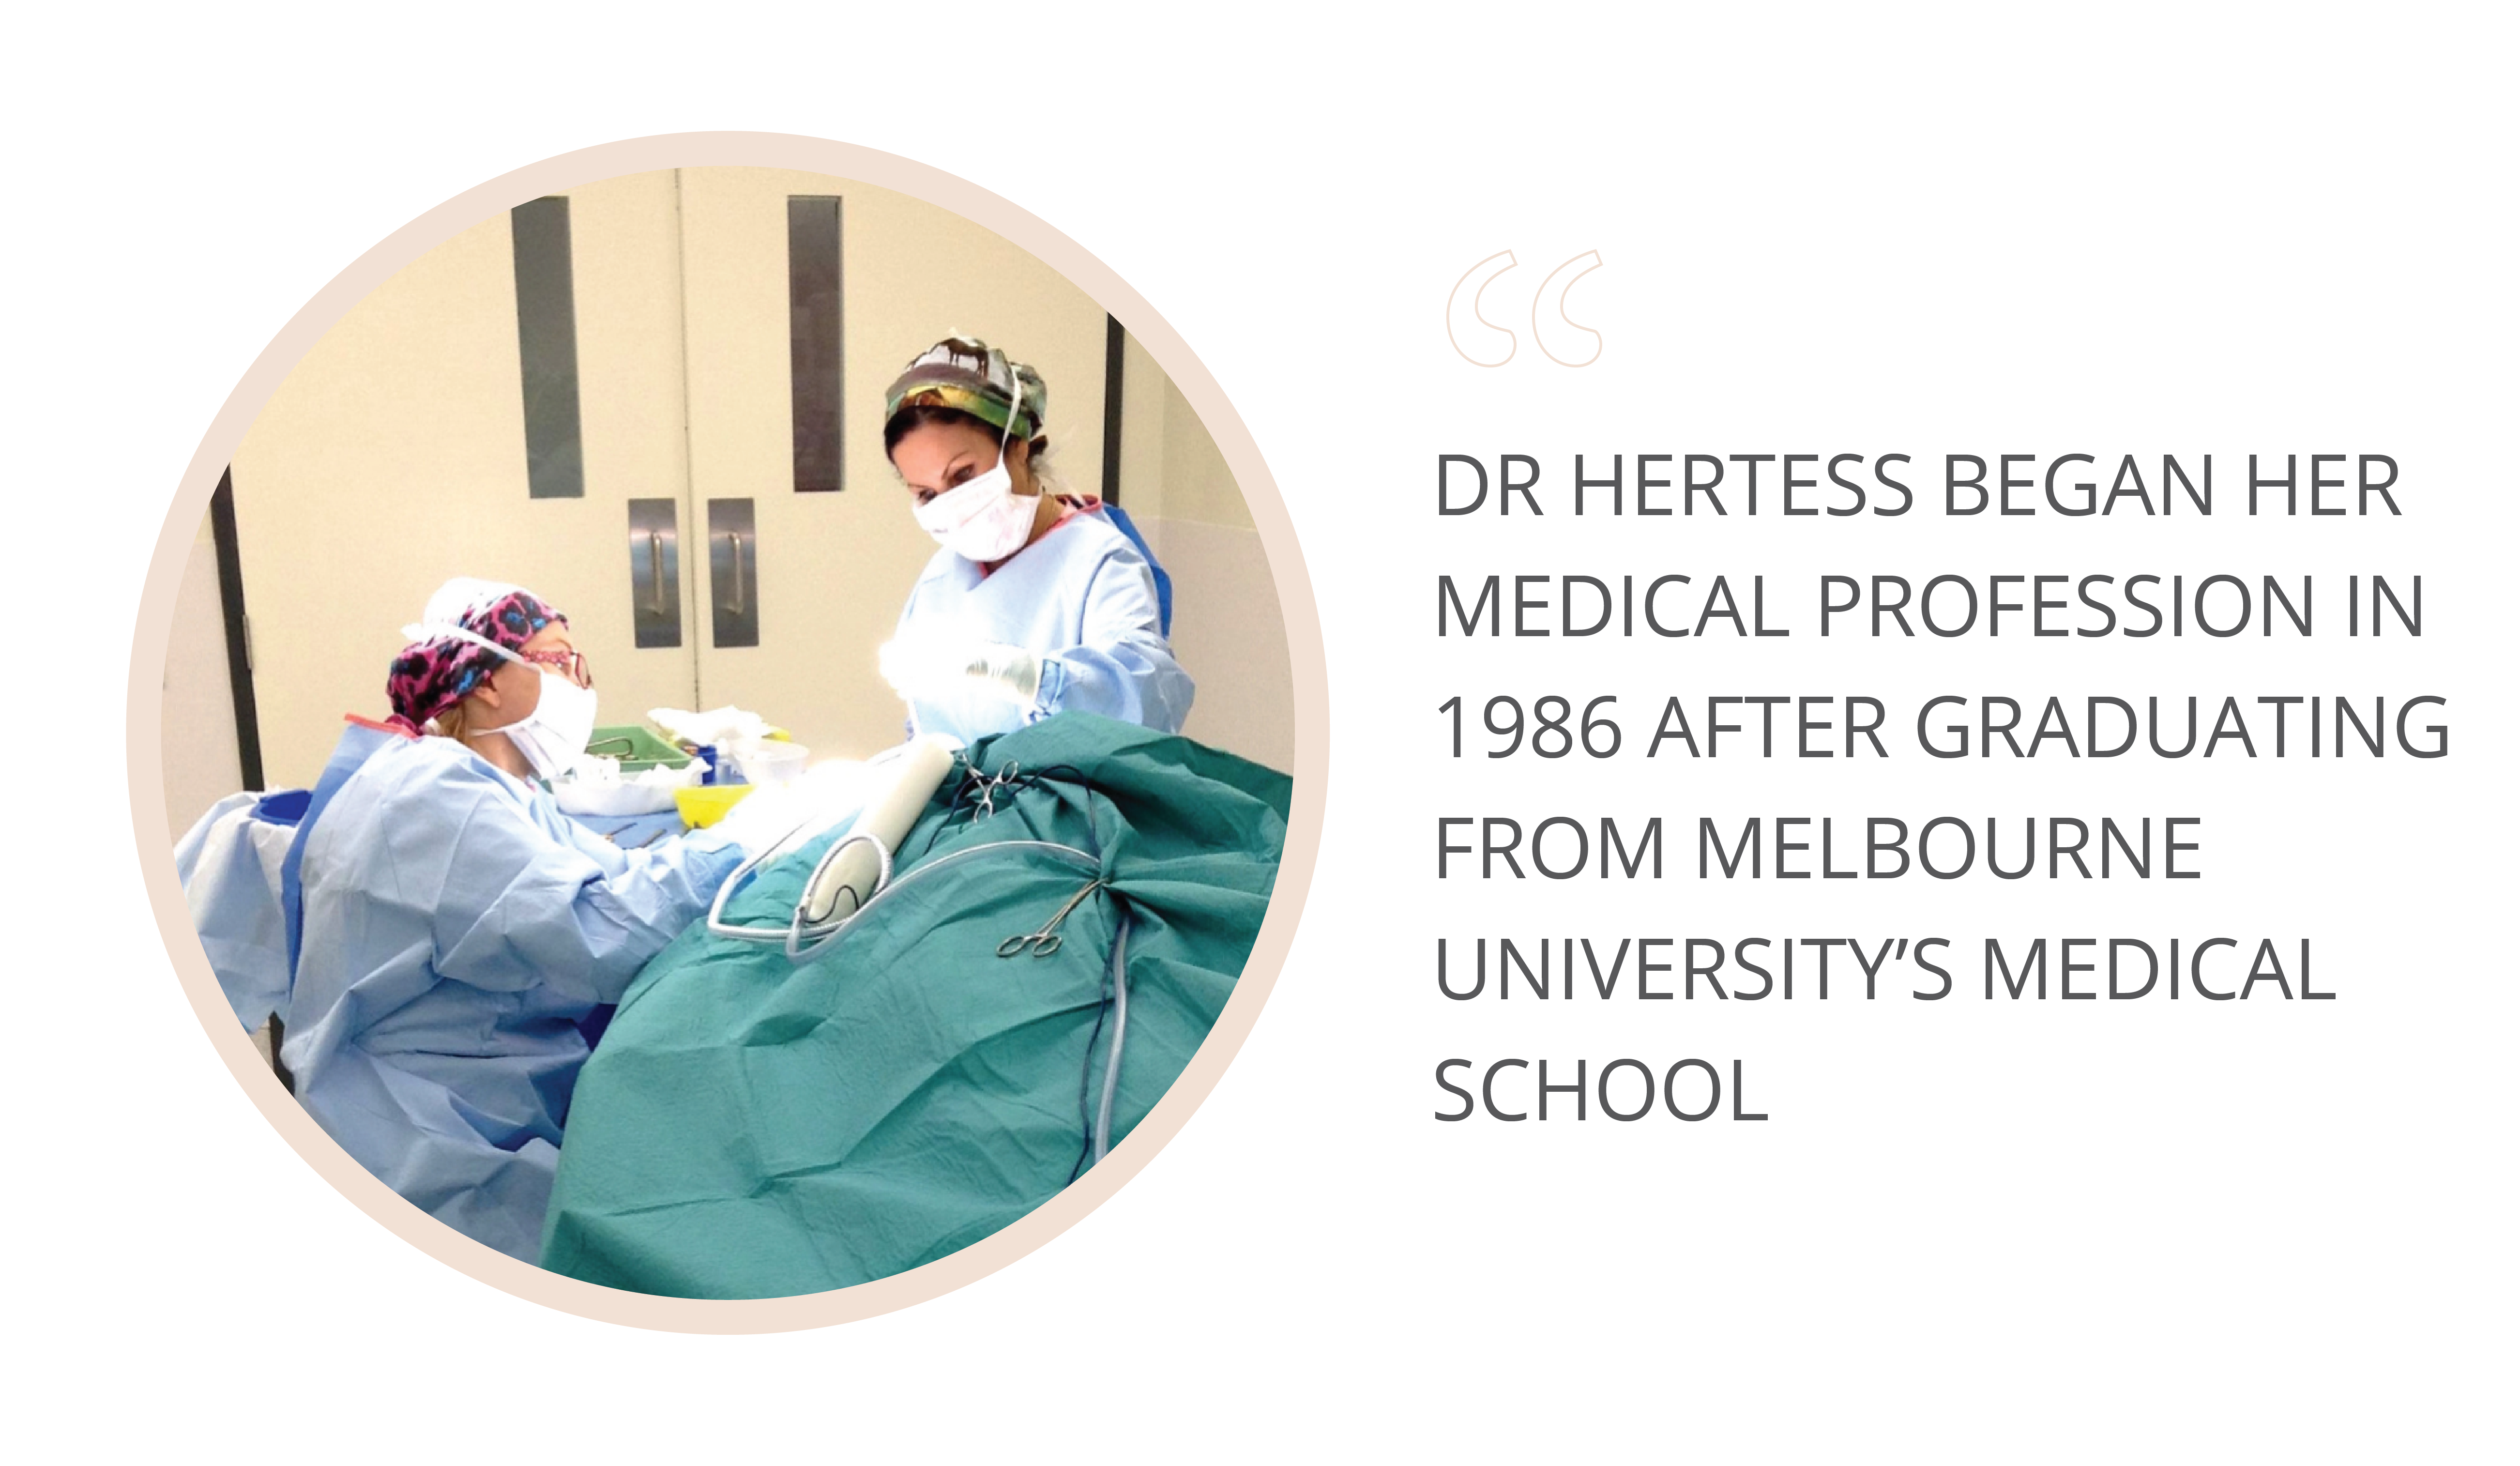 Dr Hertess began her medical profession in 1986